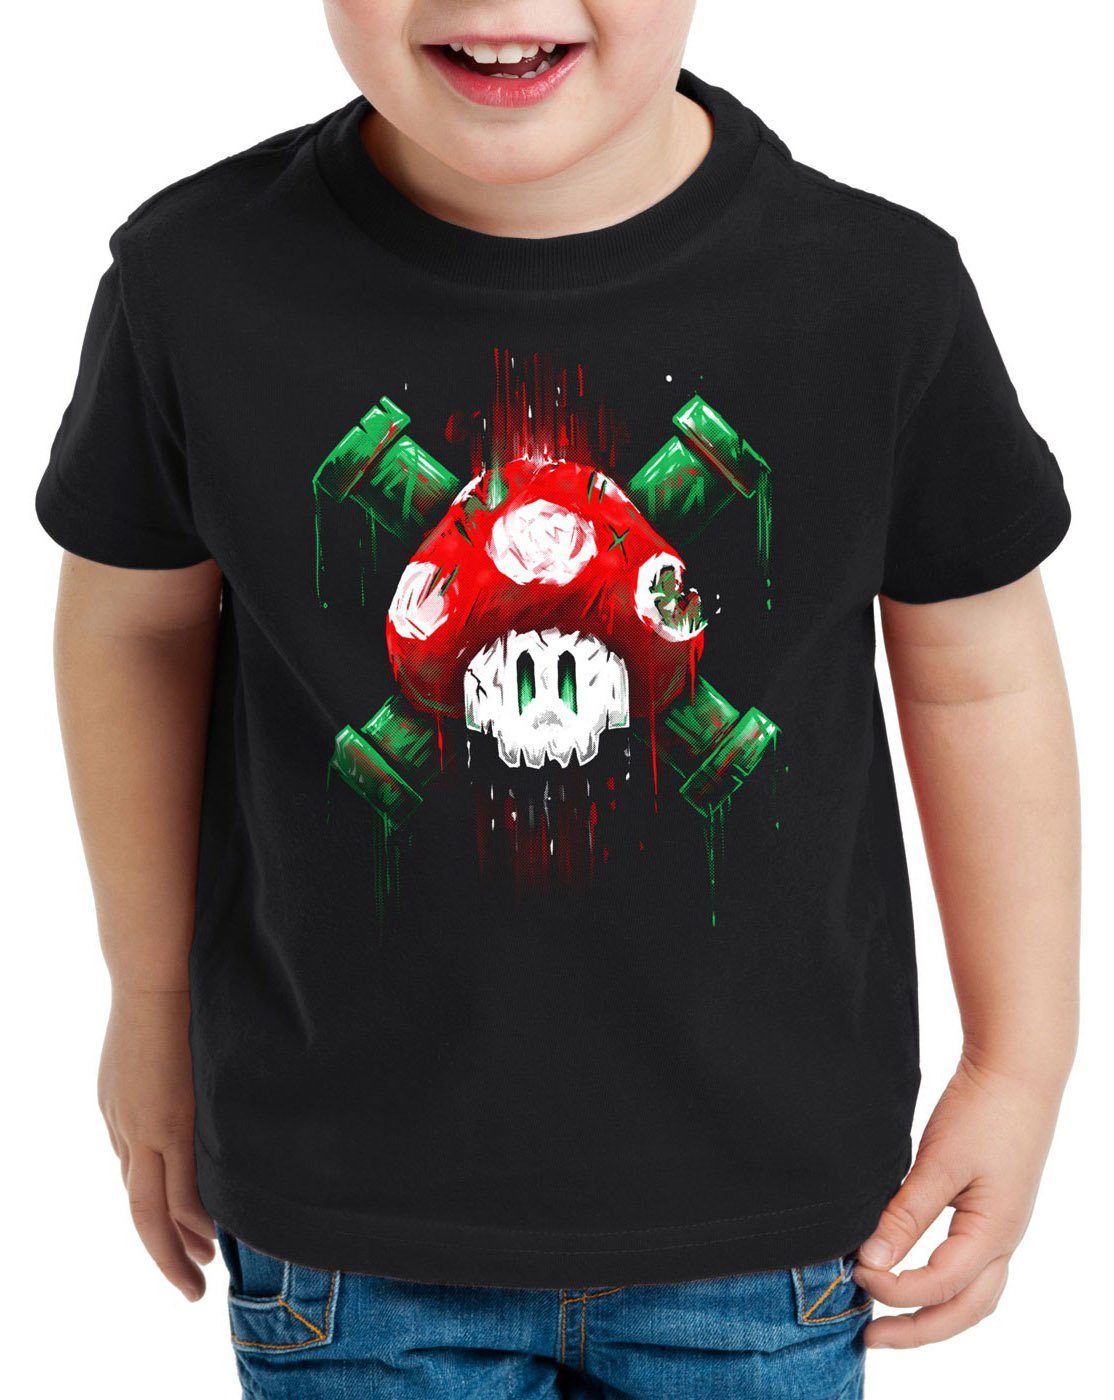 Mario konsole T-Shirt Totenkopf schwarz Kinder world Print-Shirt super style3 videospiel